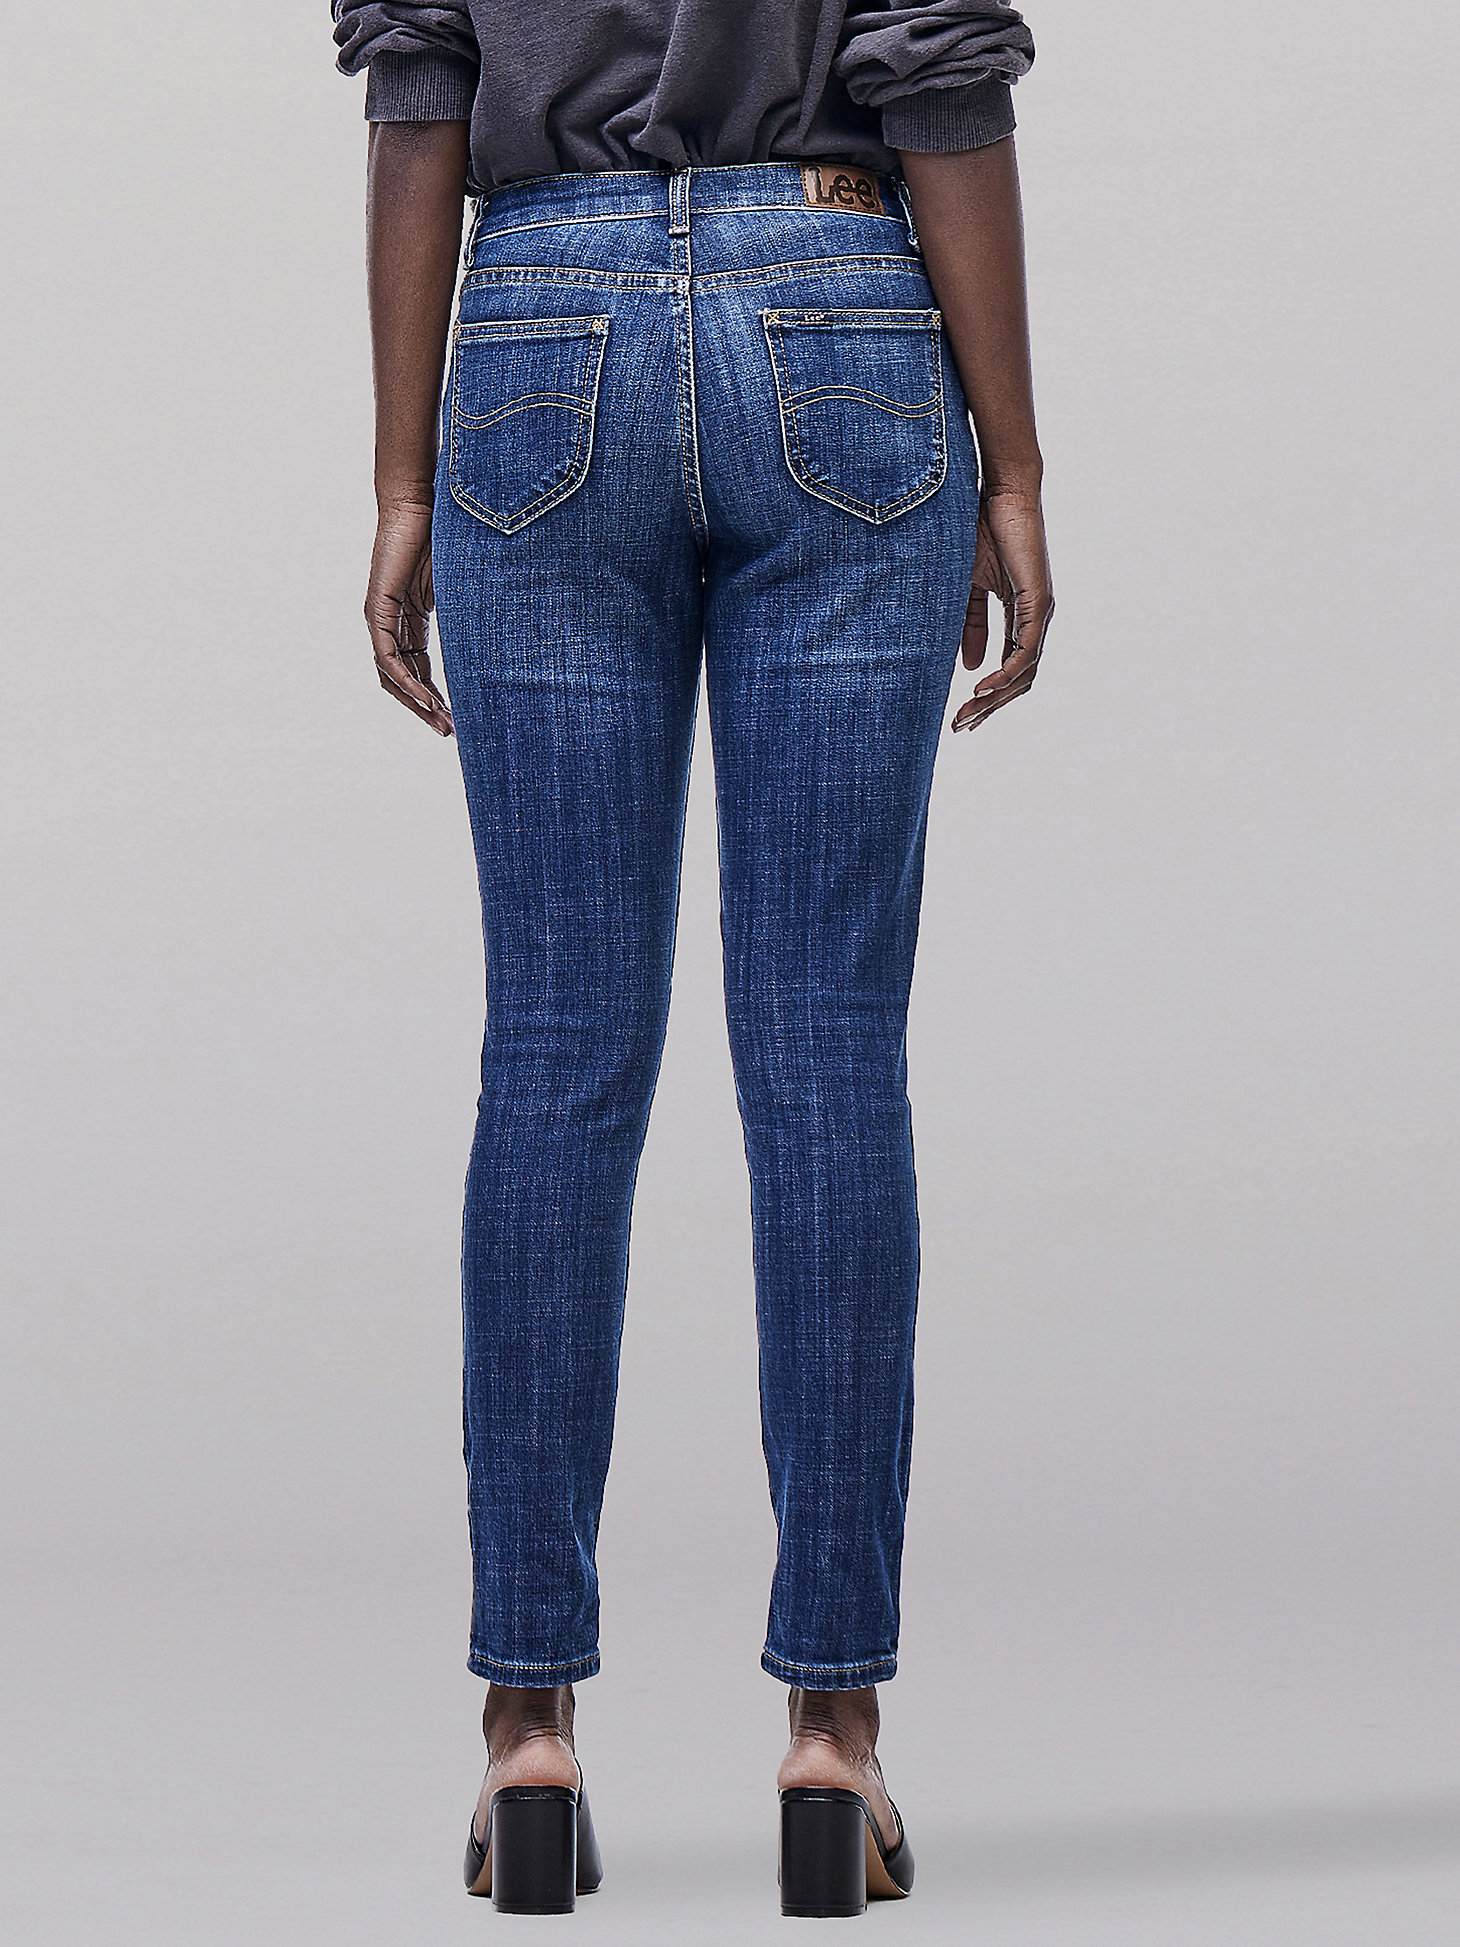 Women's Legendary Slim Fit Skinny Jean in Lagoon Blue alternative view 2